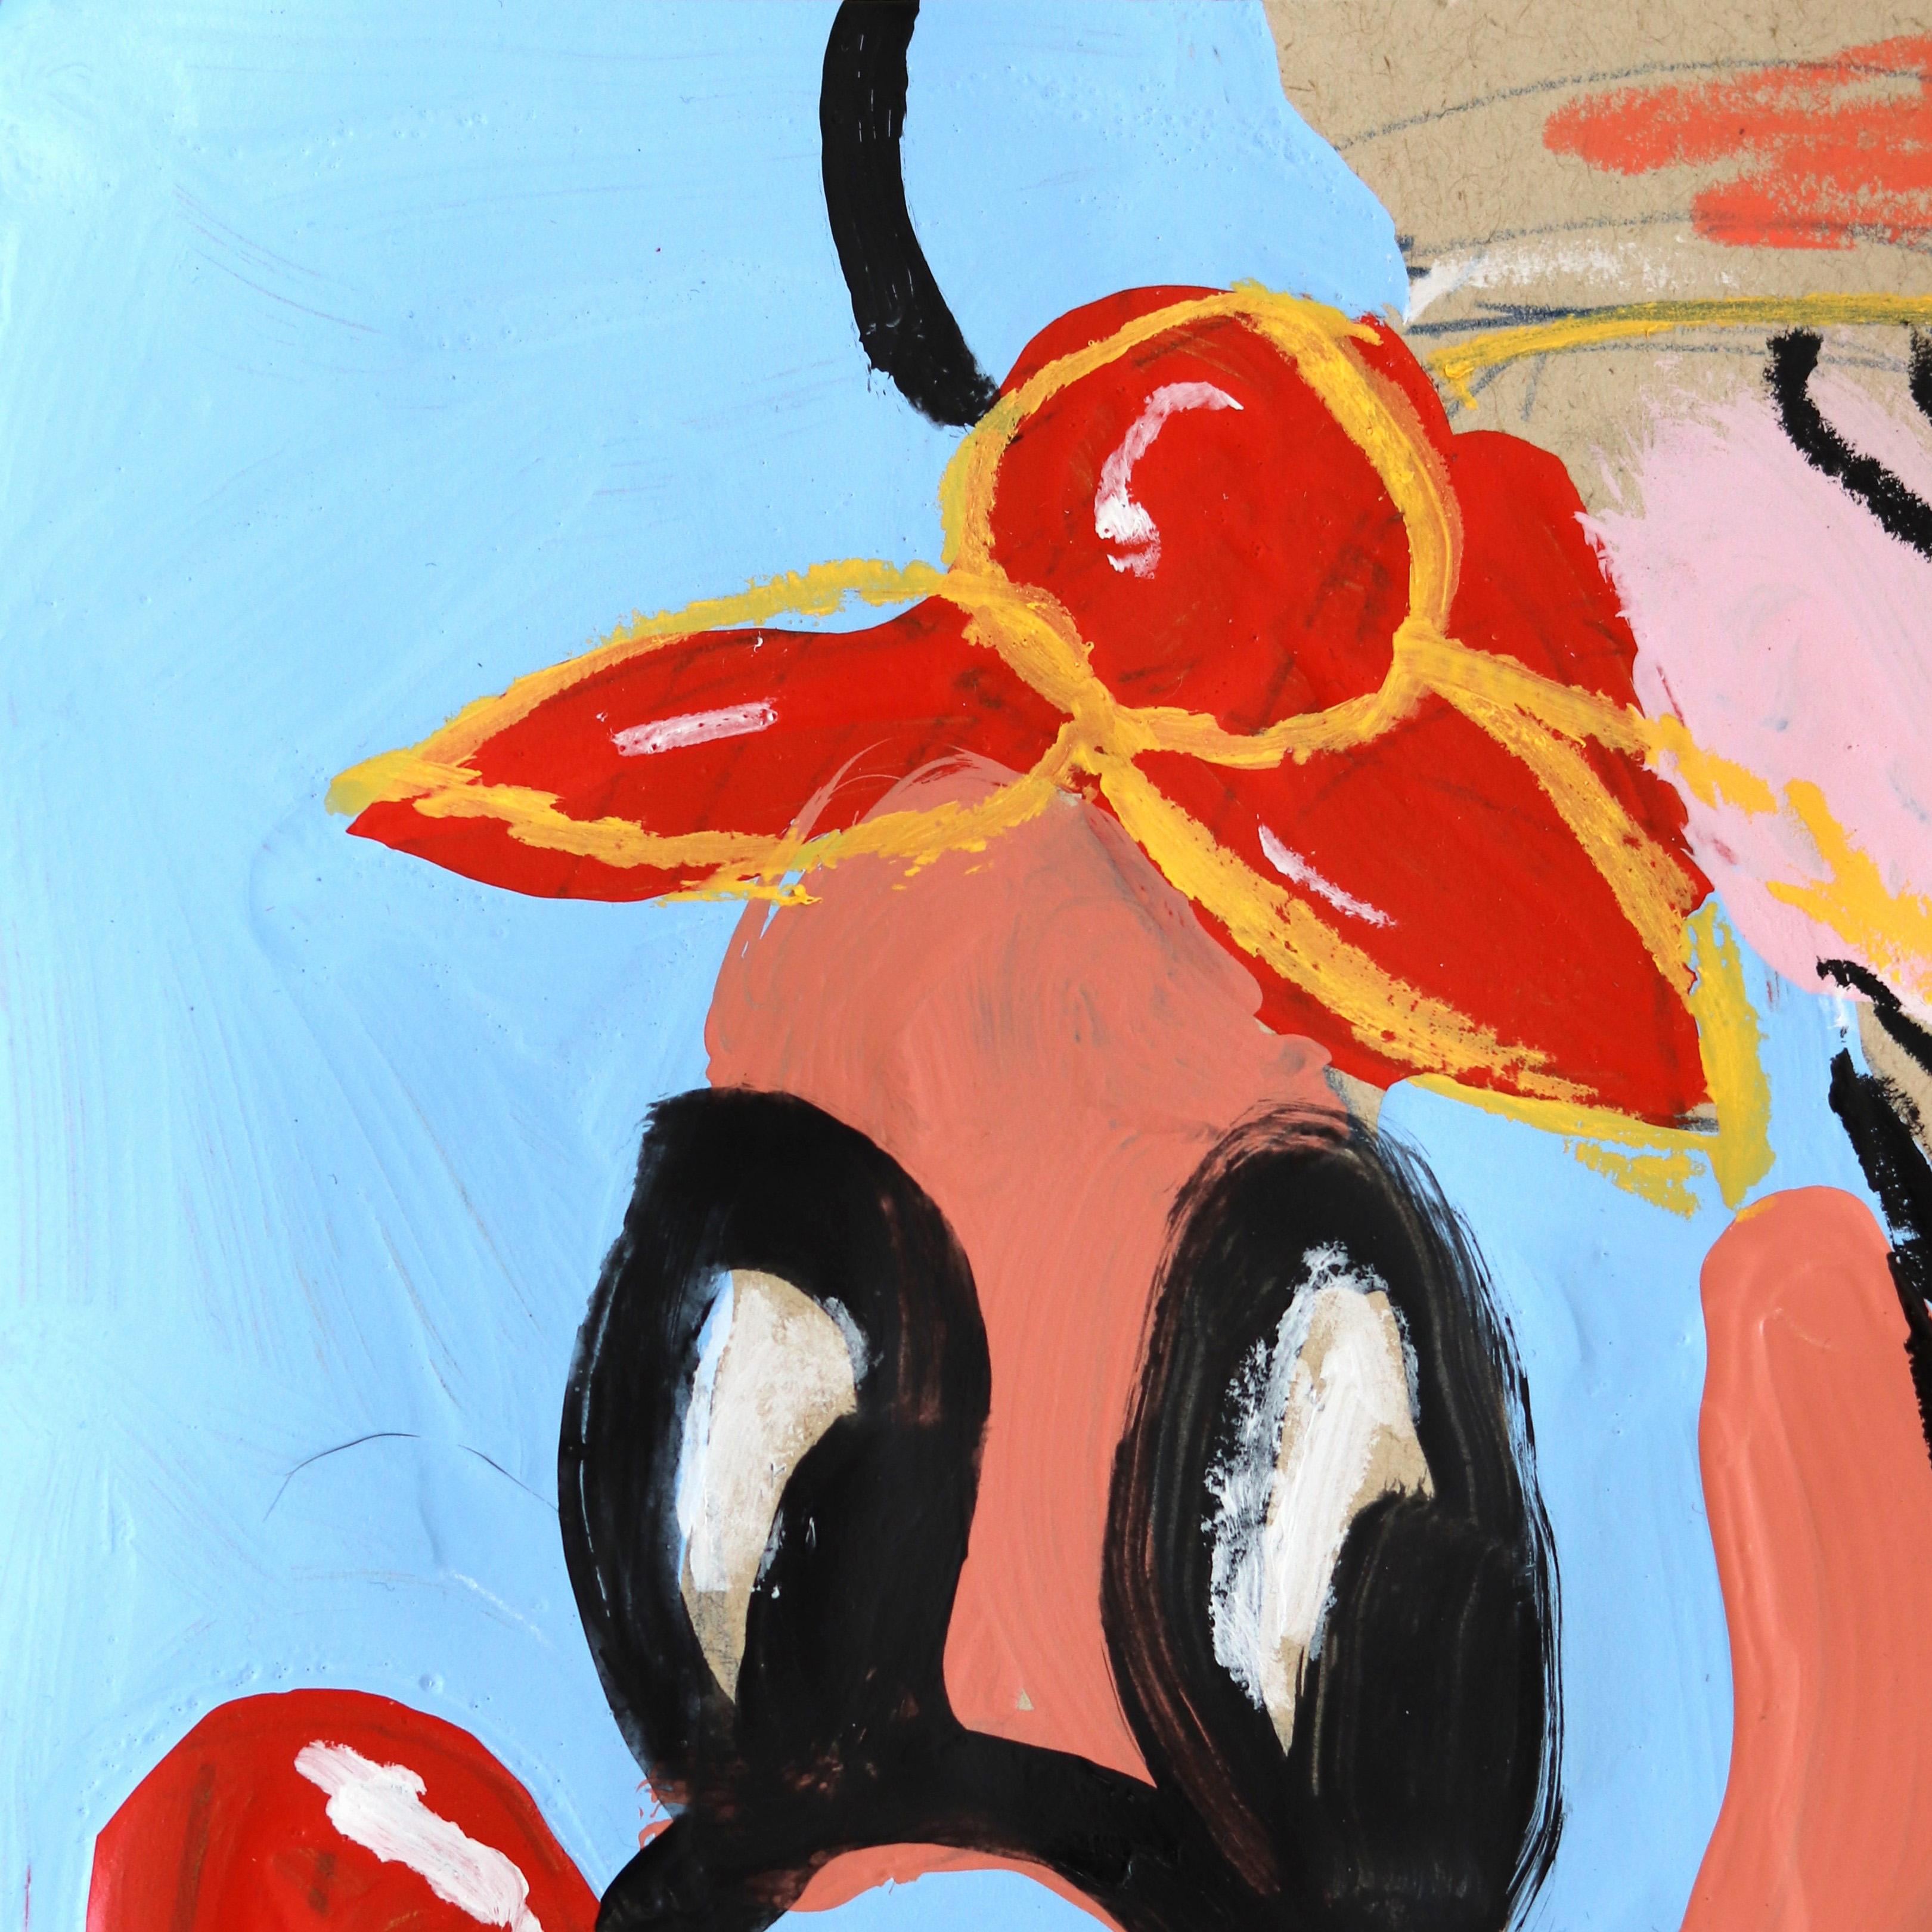 Das ist Min_E – Painting von Danny Brown